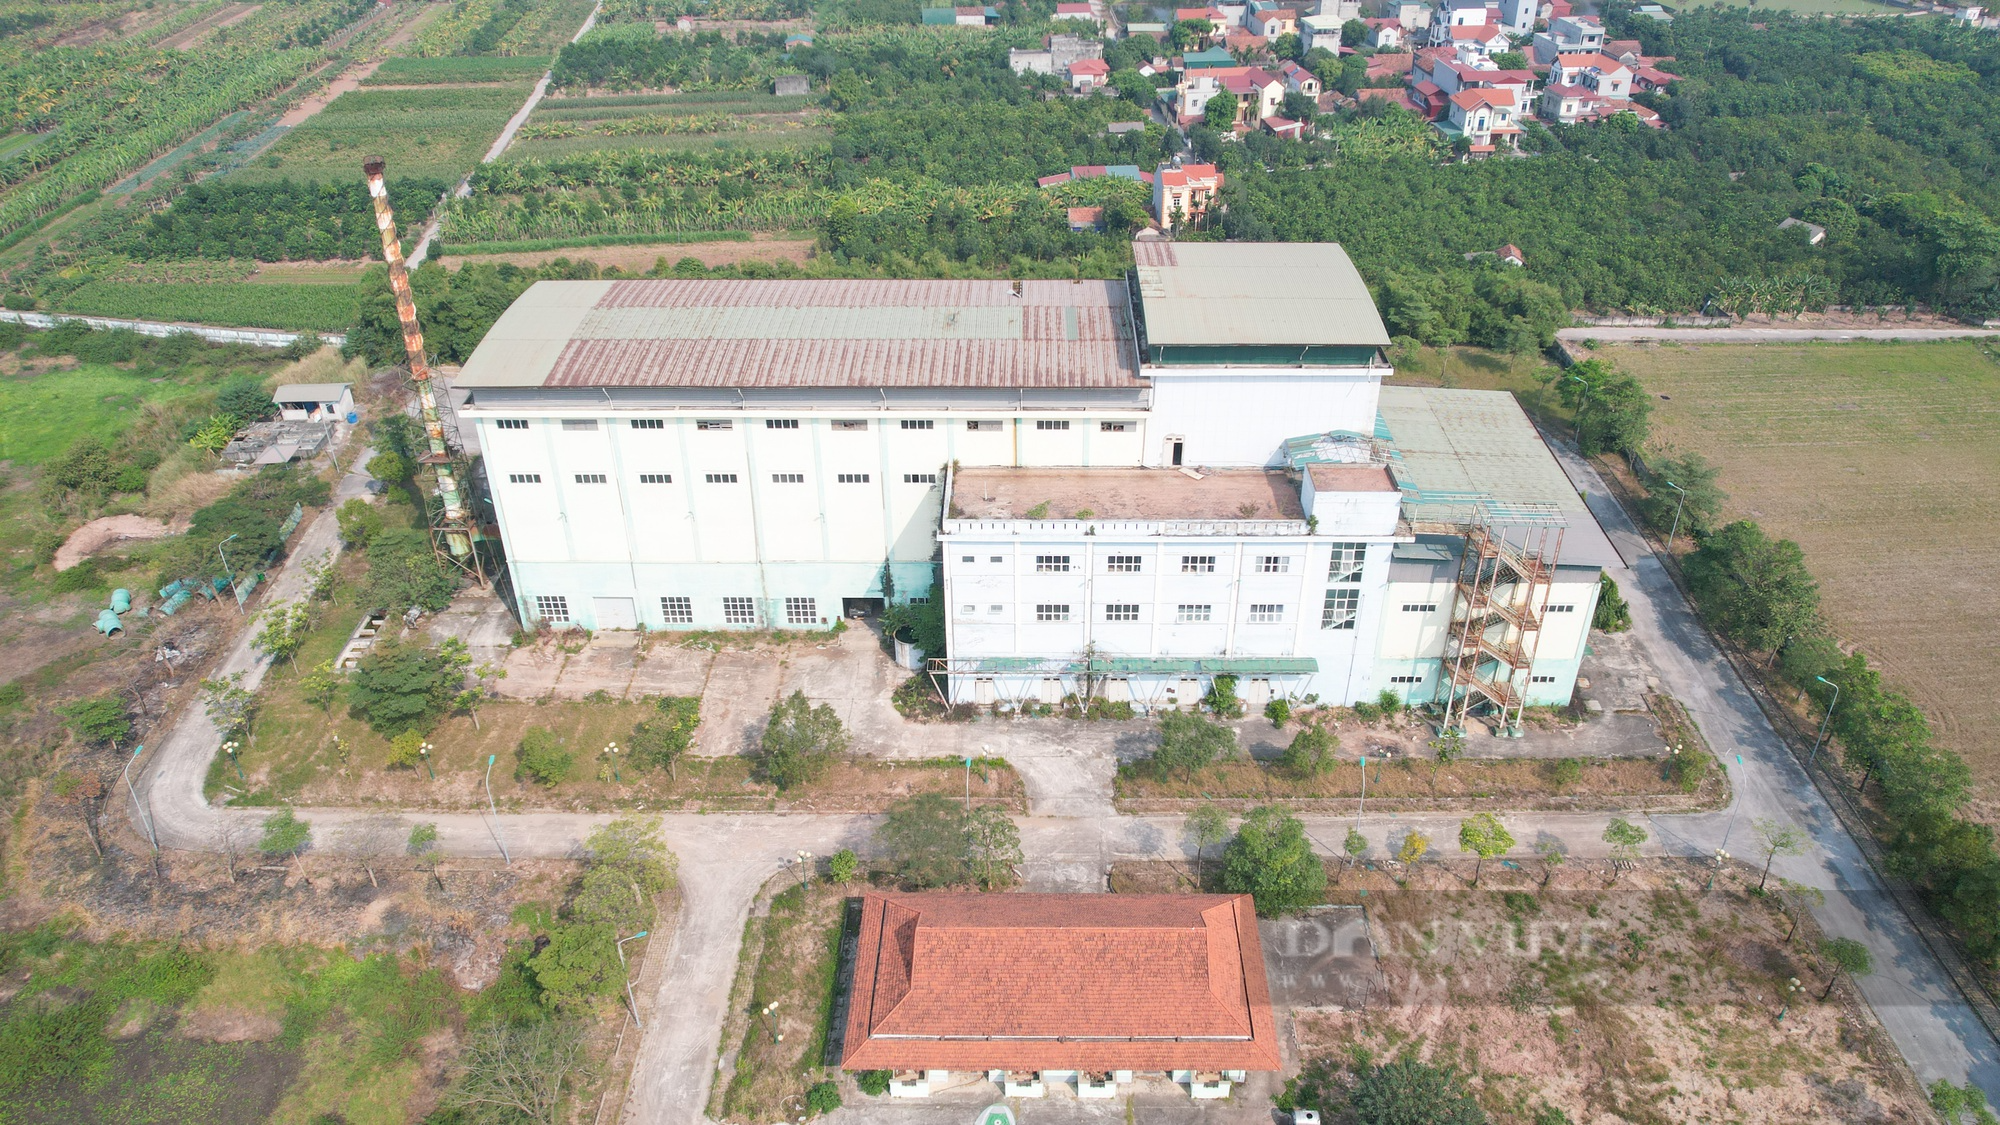 Toàn cảnh nhà máy rác trị giá hơn 200 tỉ bỏ hoang ở Hà Nội - Ảnh 6.